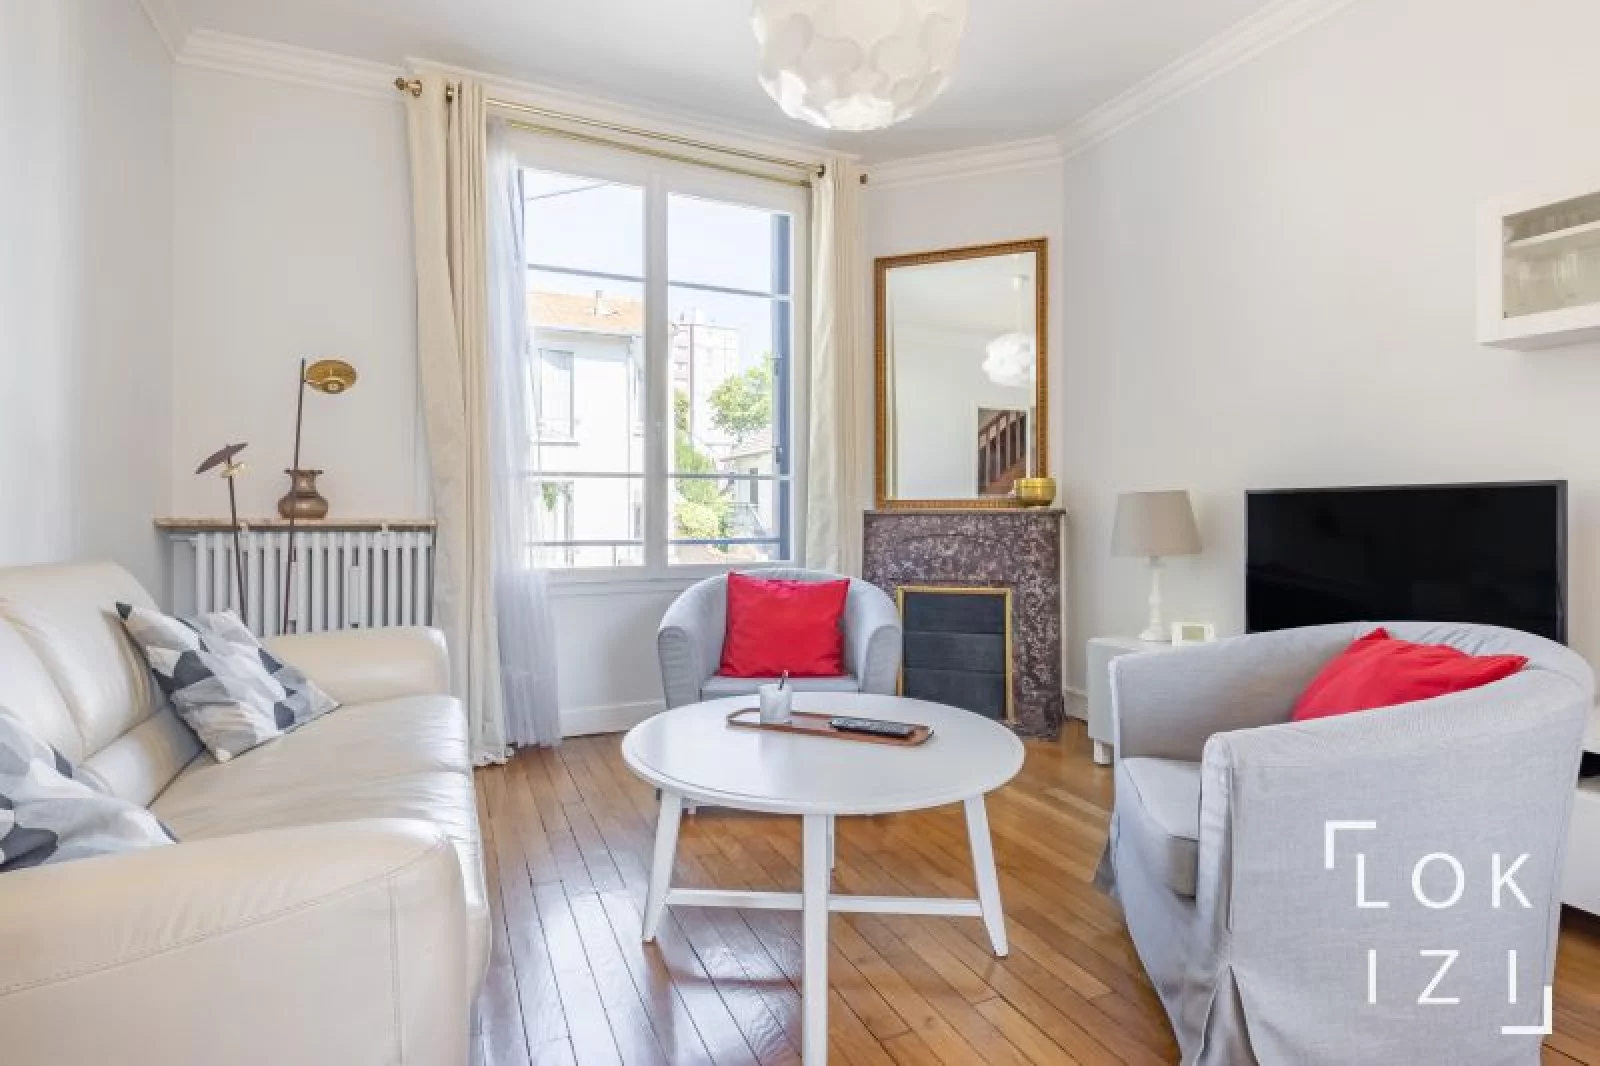 Location maison de ville meublée 3 pièces 98 m² (Paris Sud 92 - Bagneux)